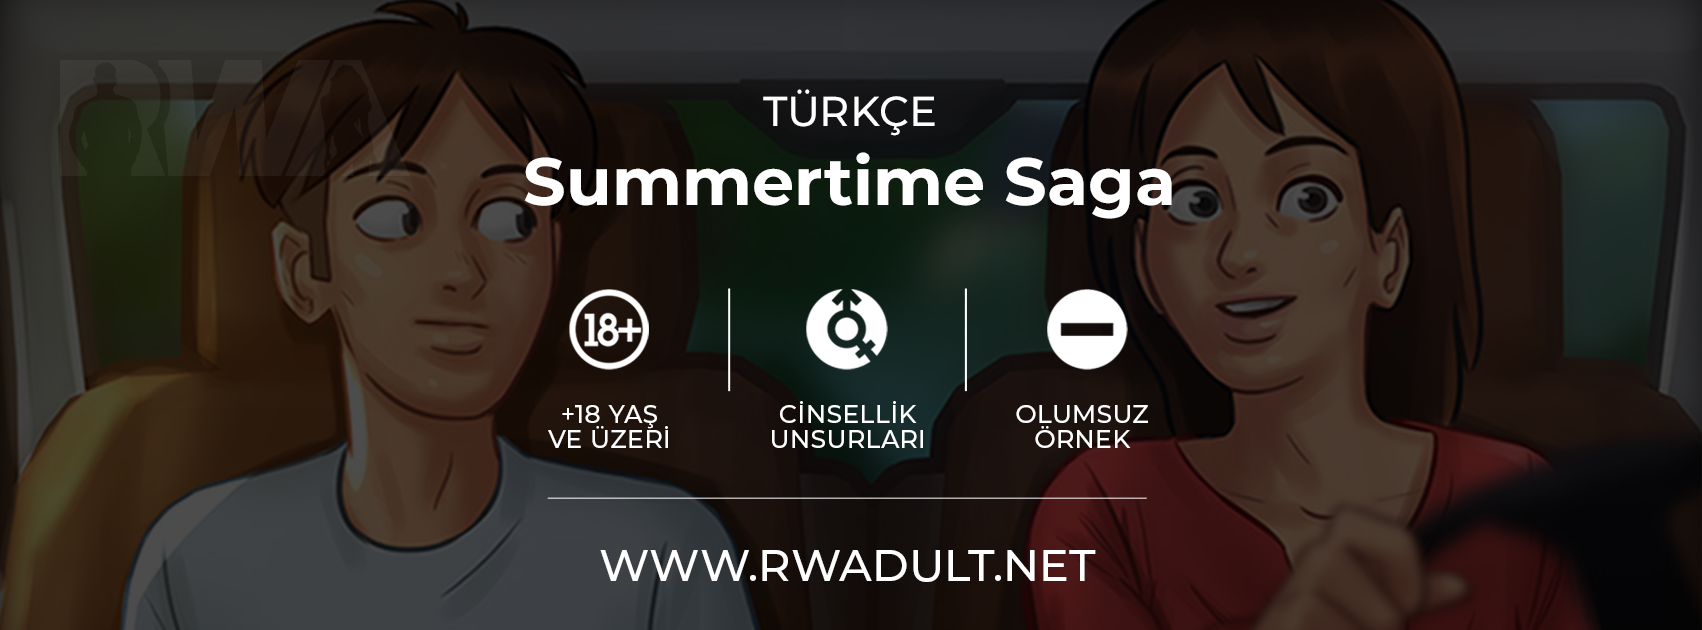 RWADULT - Türkiye'nin En Büyük Yetişkin Oyun Topluluğu